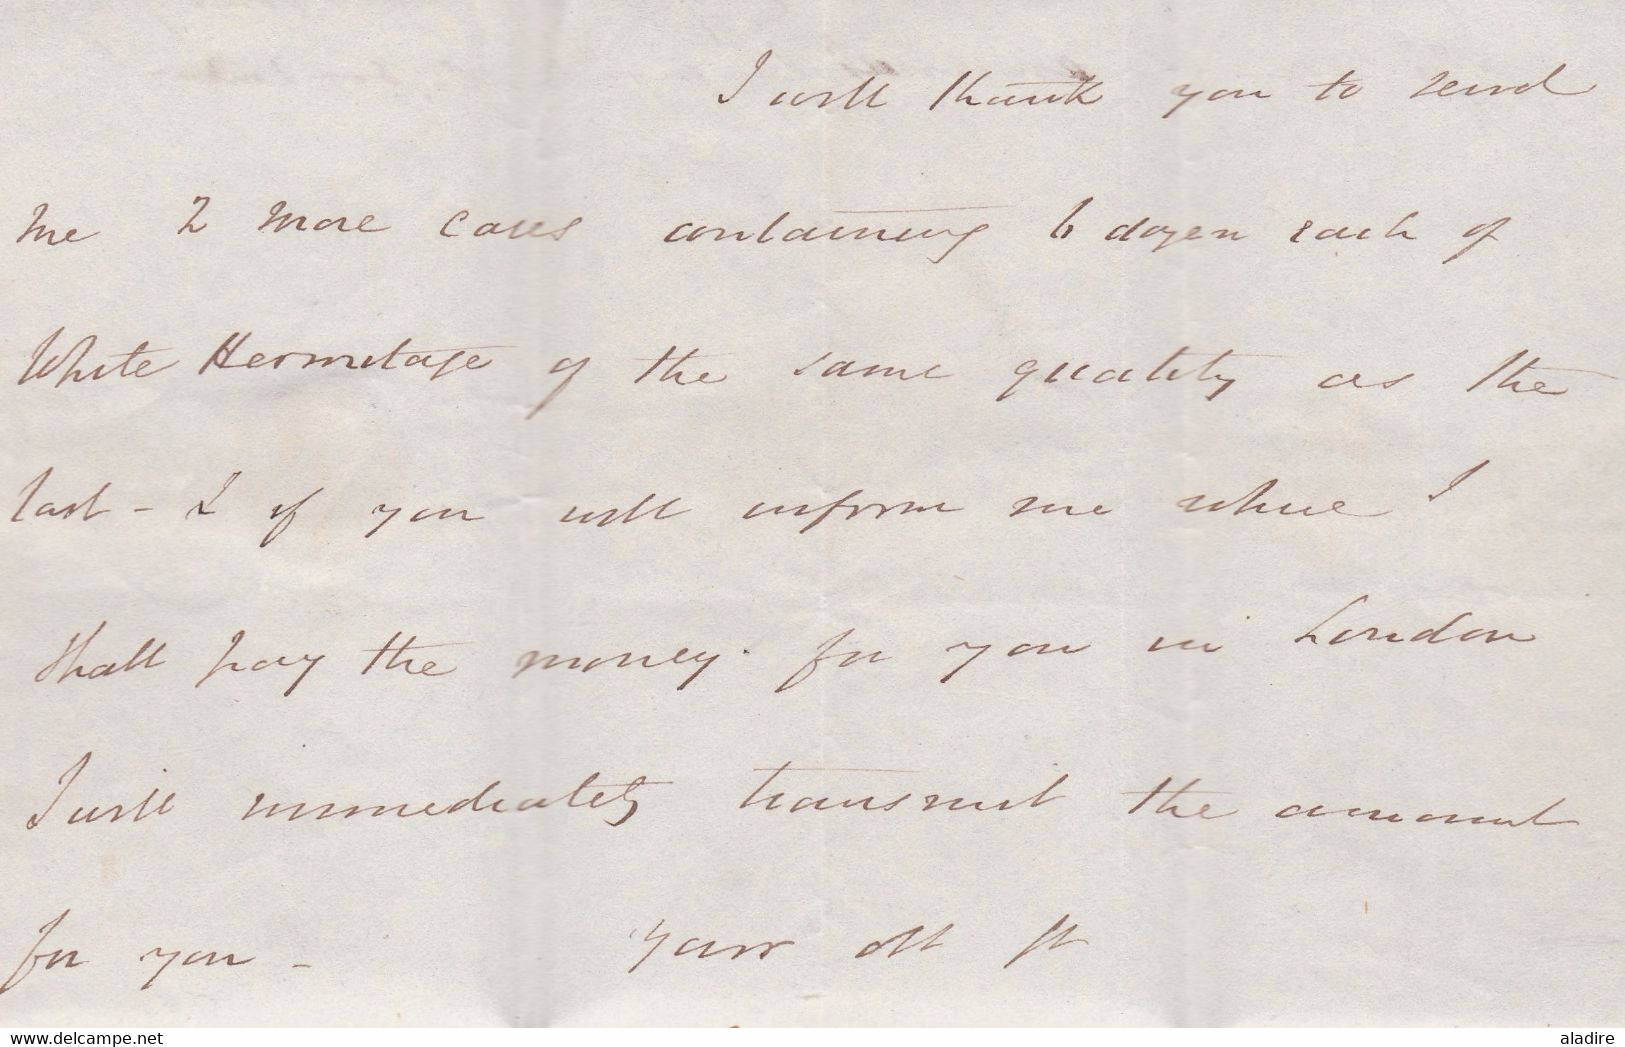 1840 - QV - Lettre pliée avec correspondance en anglais et sa traduction de Bristol vers St Peray, Ardèche - white wine